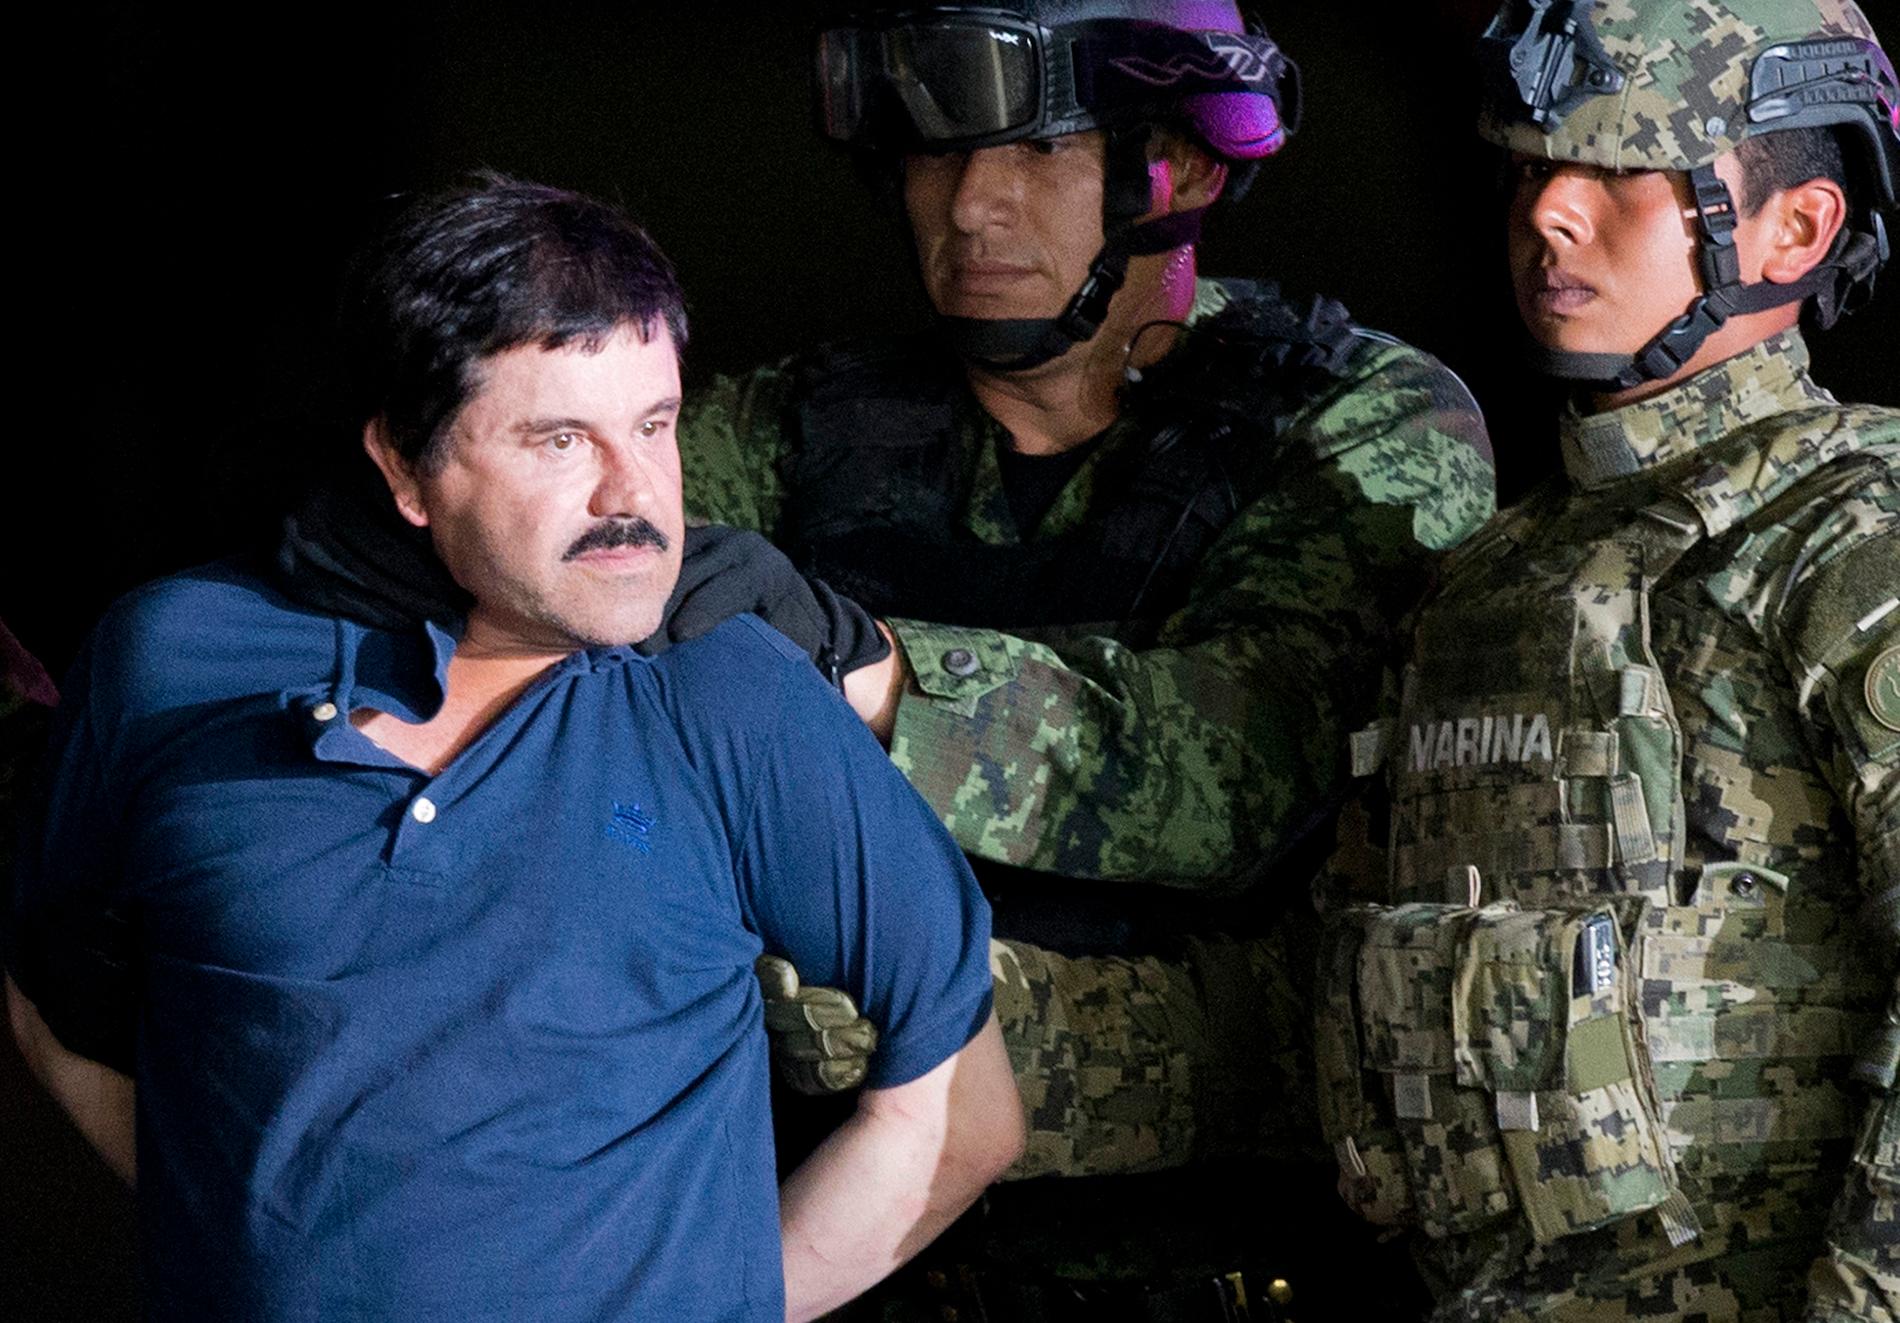 Joaquin "El Chapo" Guzman sedan han gripits efter en fängelseflykt 2016.